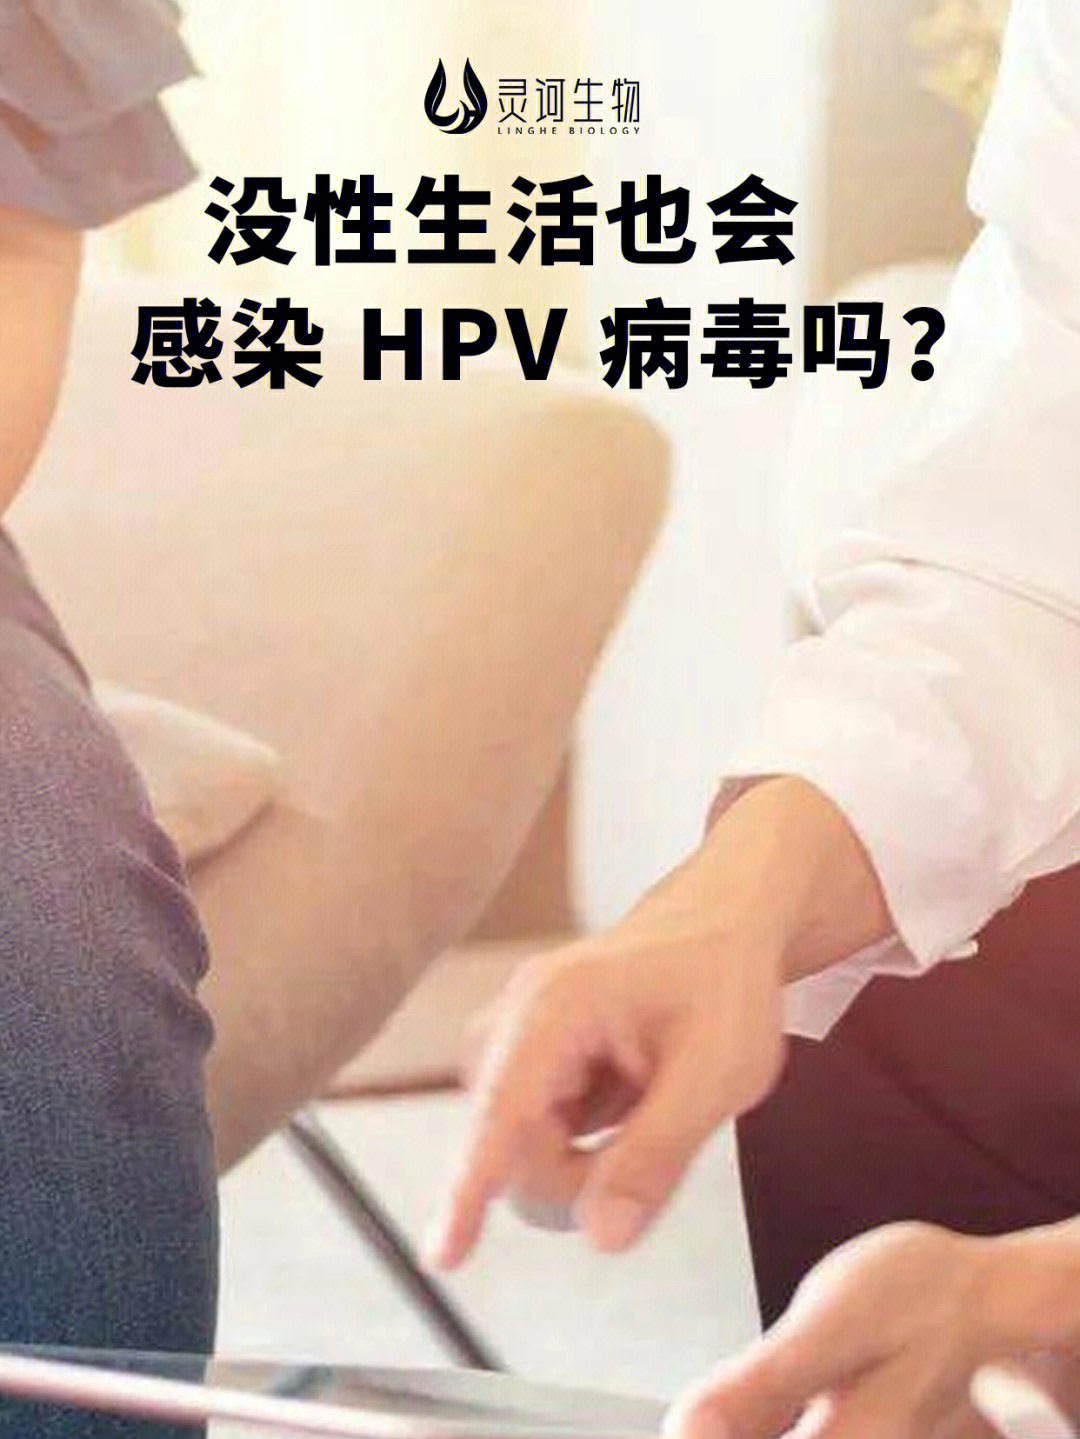 没性生活也会感染hpv病毒吗